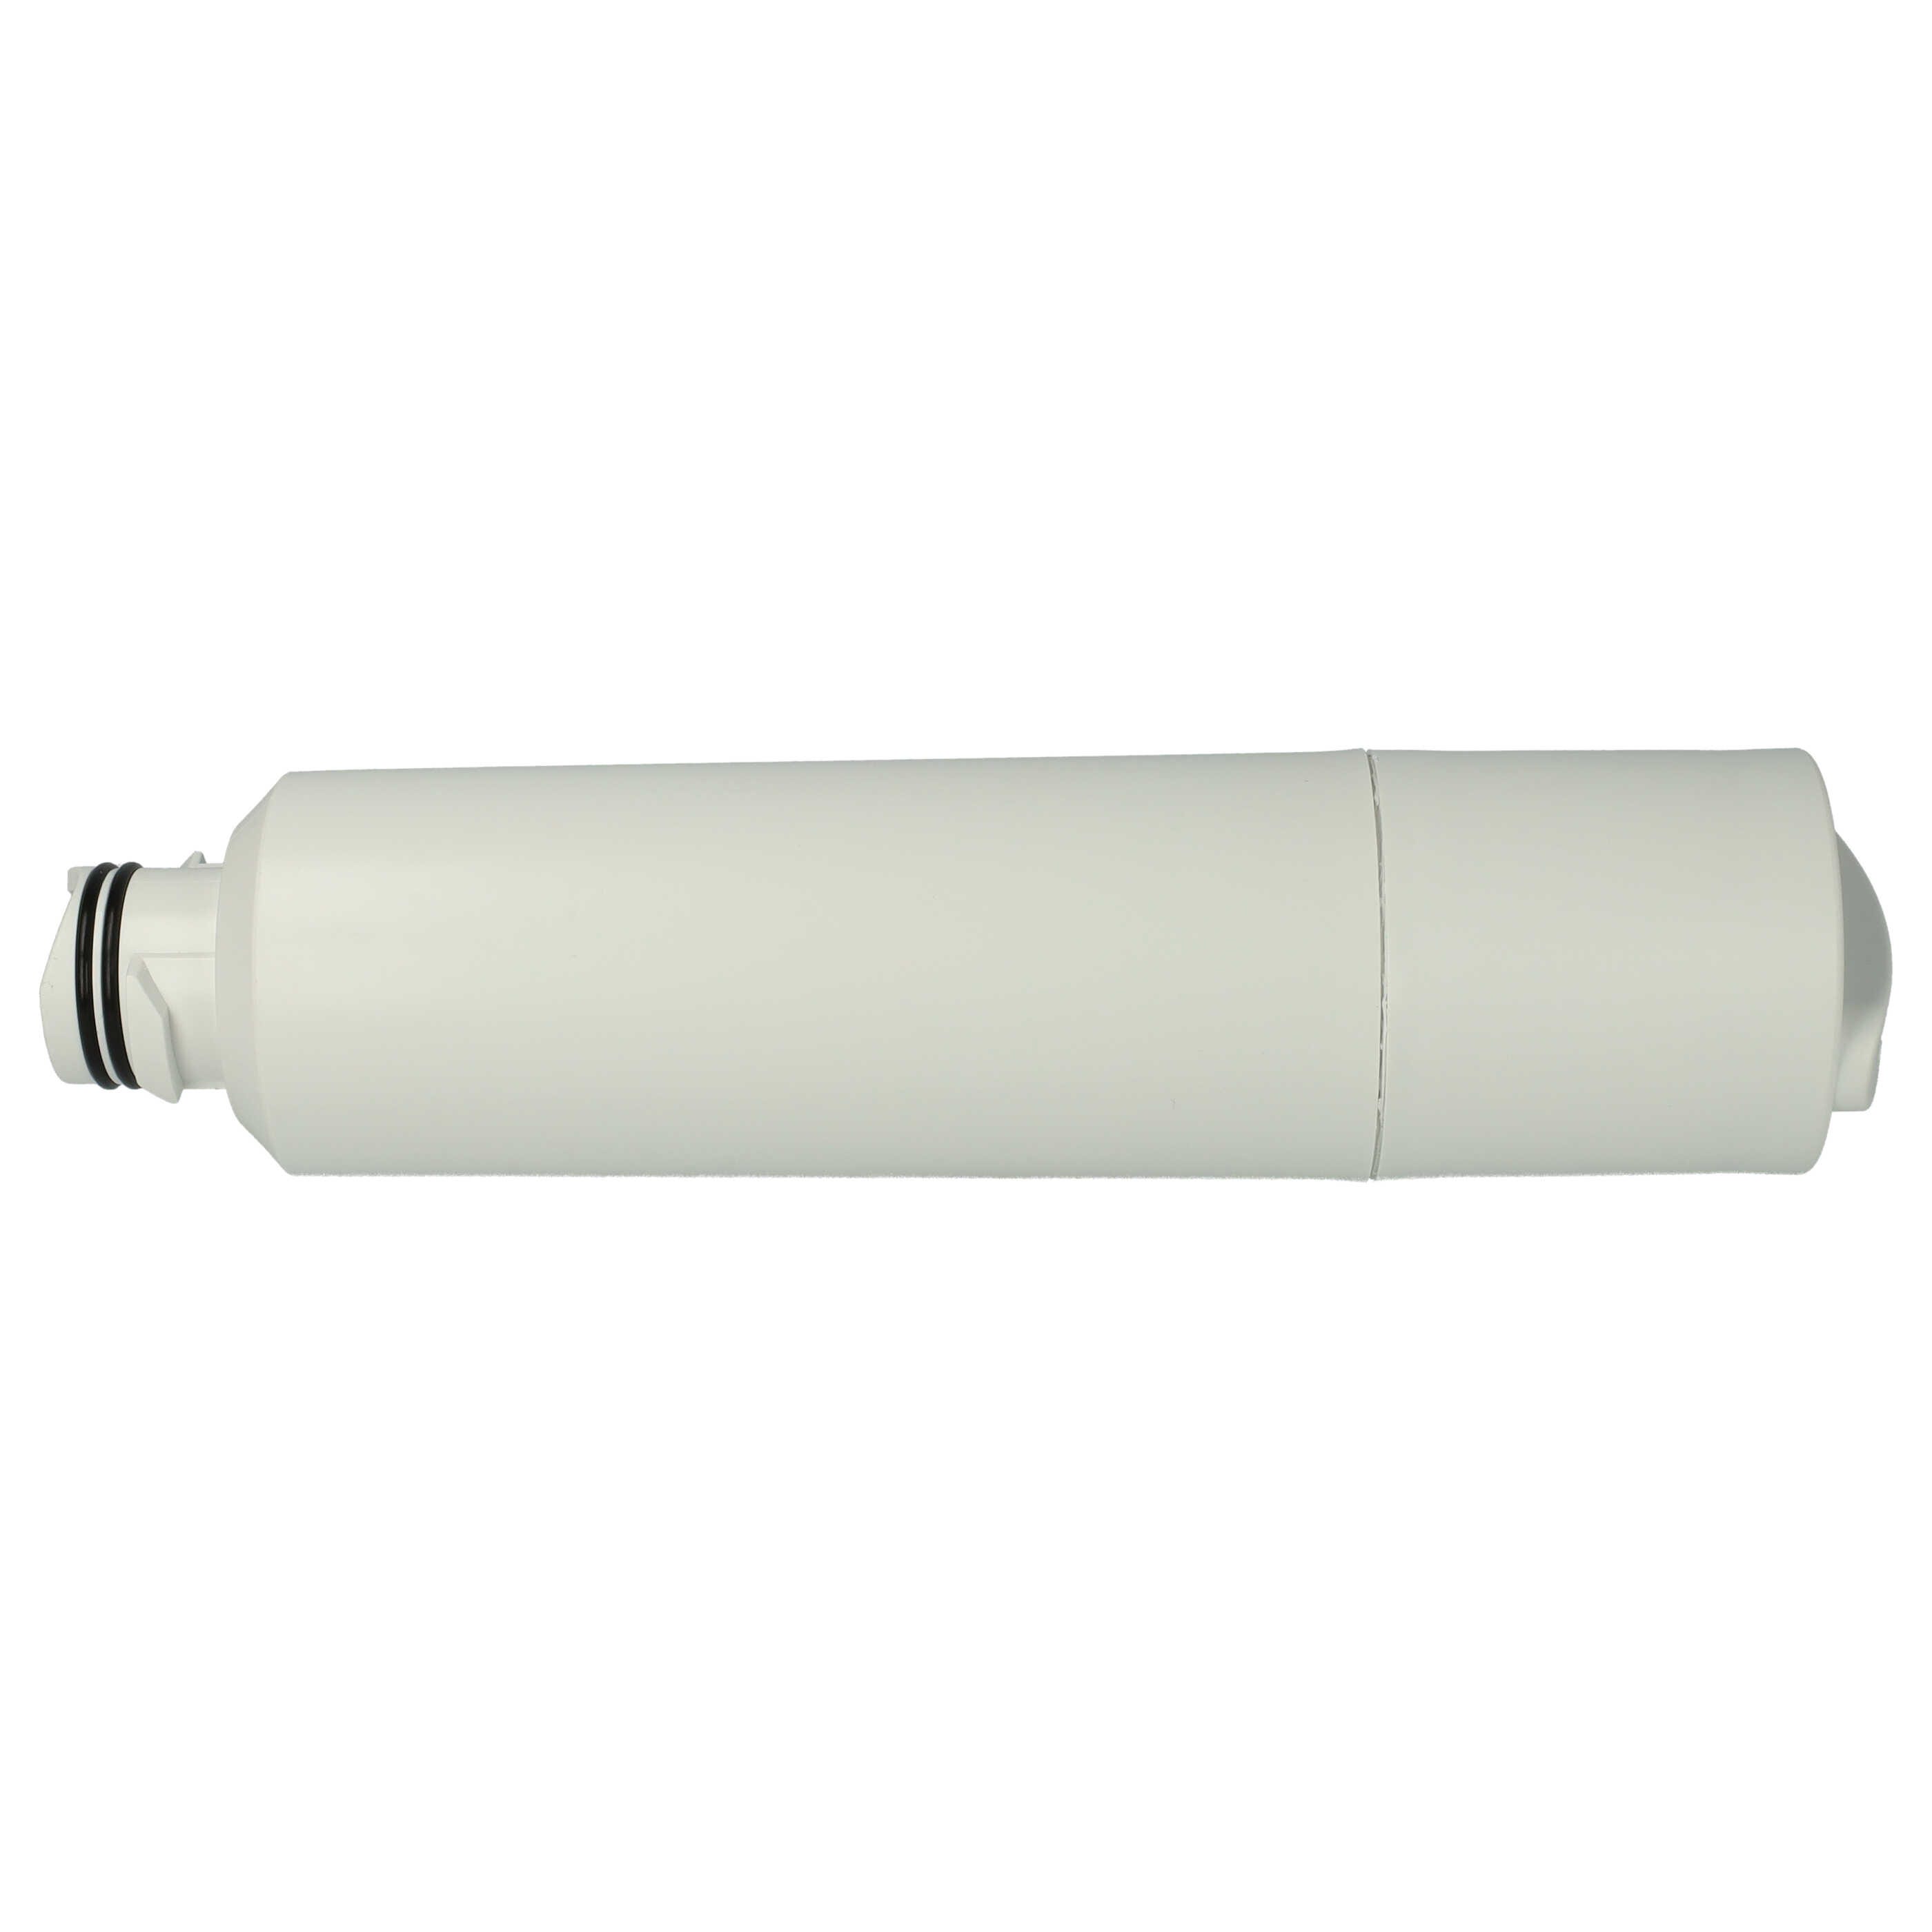 Vhbw Filtre à eau Cartouche compatible avec Samsung RS25J500DWW, RS261,  RS261MDRS, RS261MDWP, RS263, RS263TDBP Réfrigérateur Side-by-side